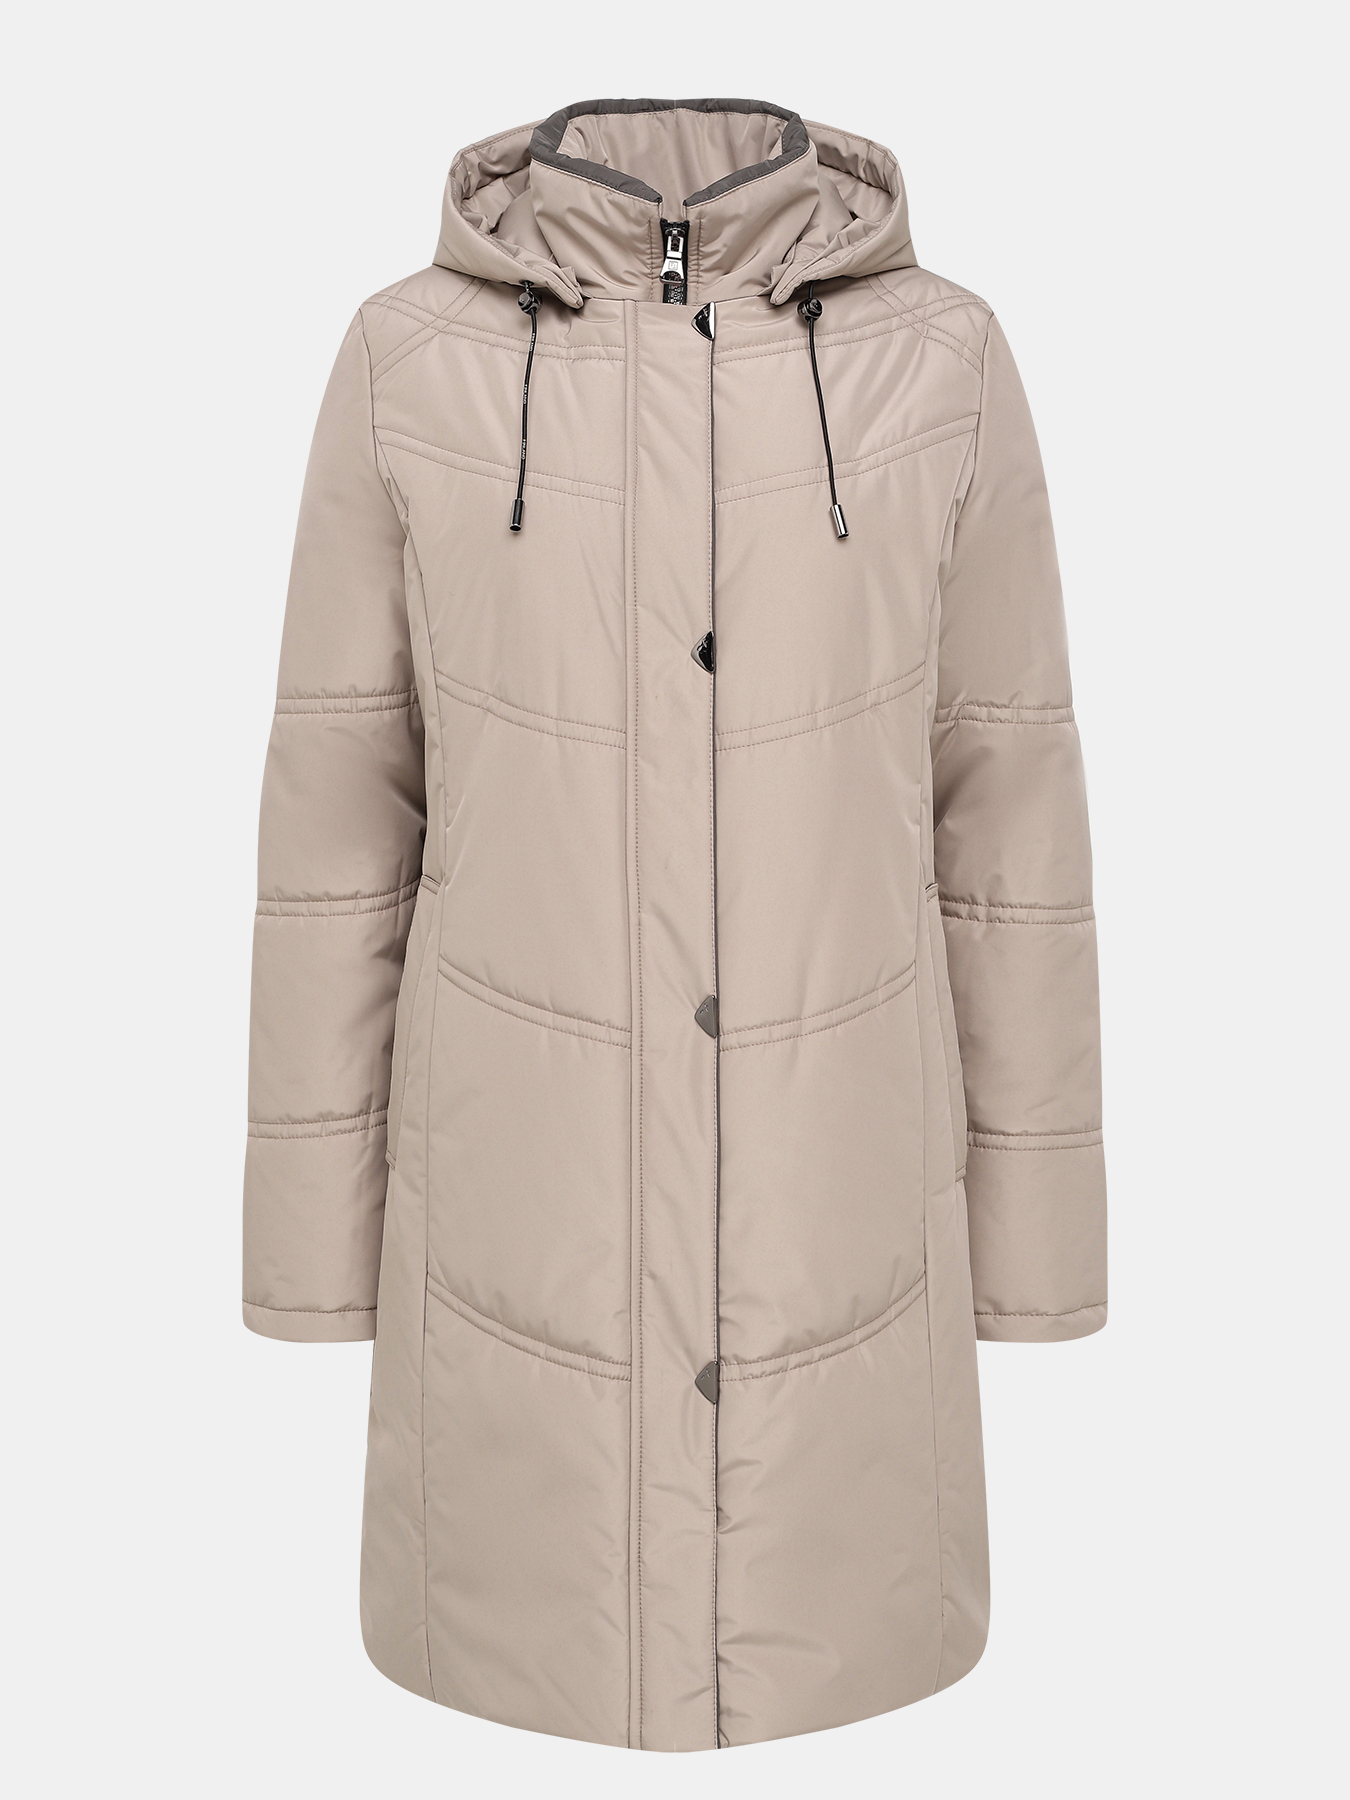 Пальто зимнее Maritta 433523-020, цвет бежевый, размер 44